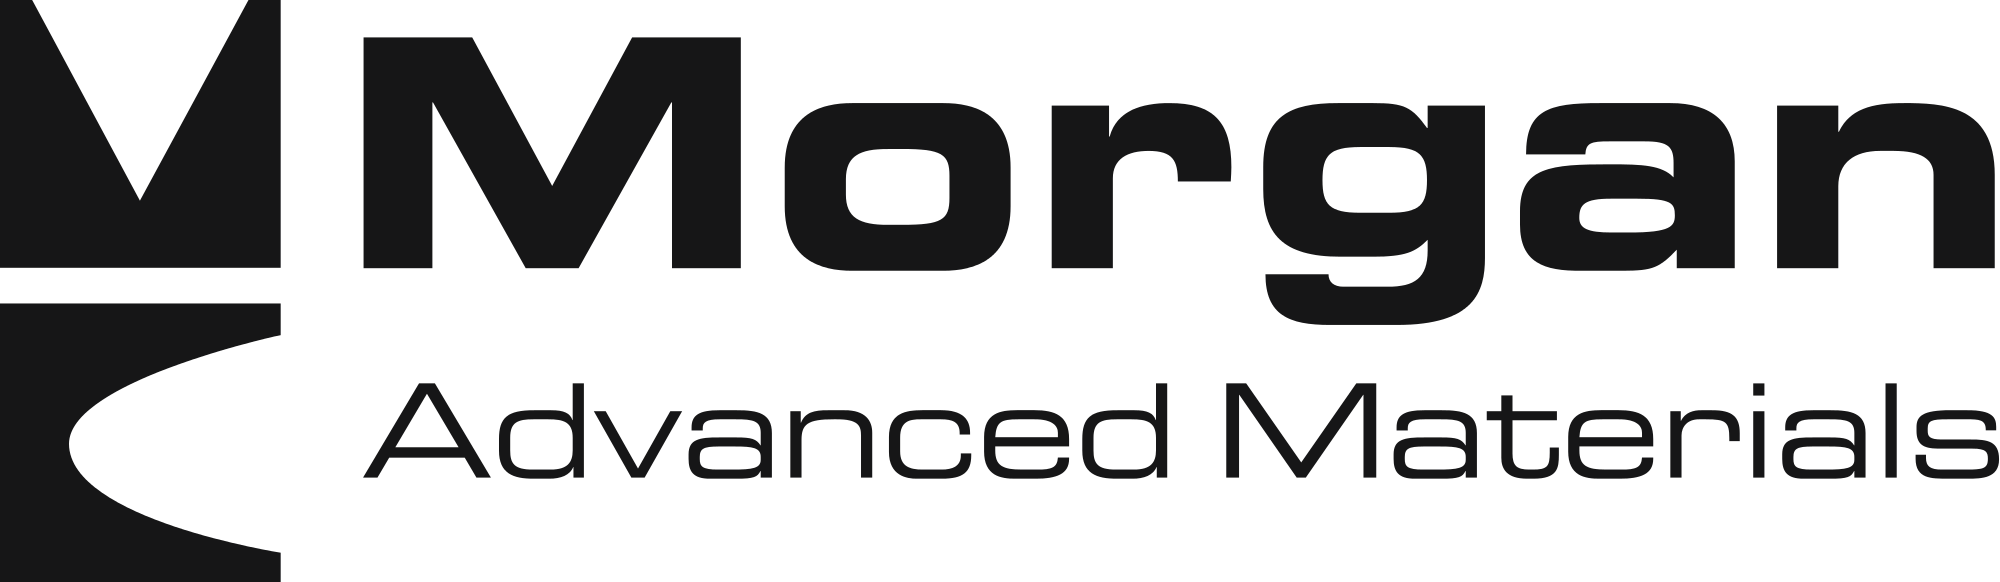 логотип Morgan Advanced Materials